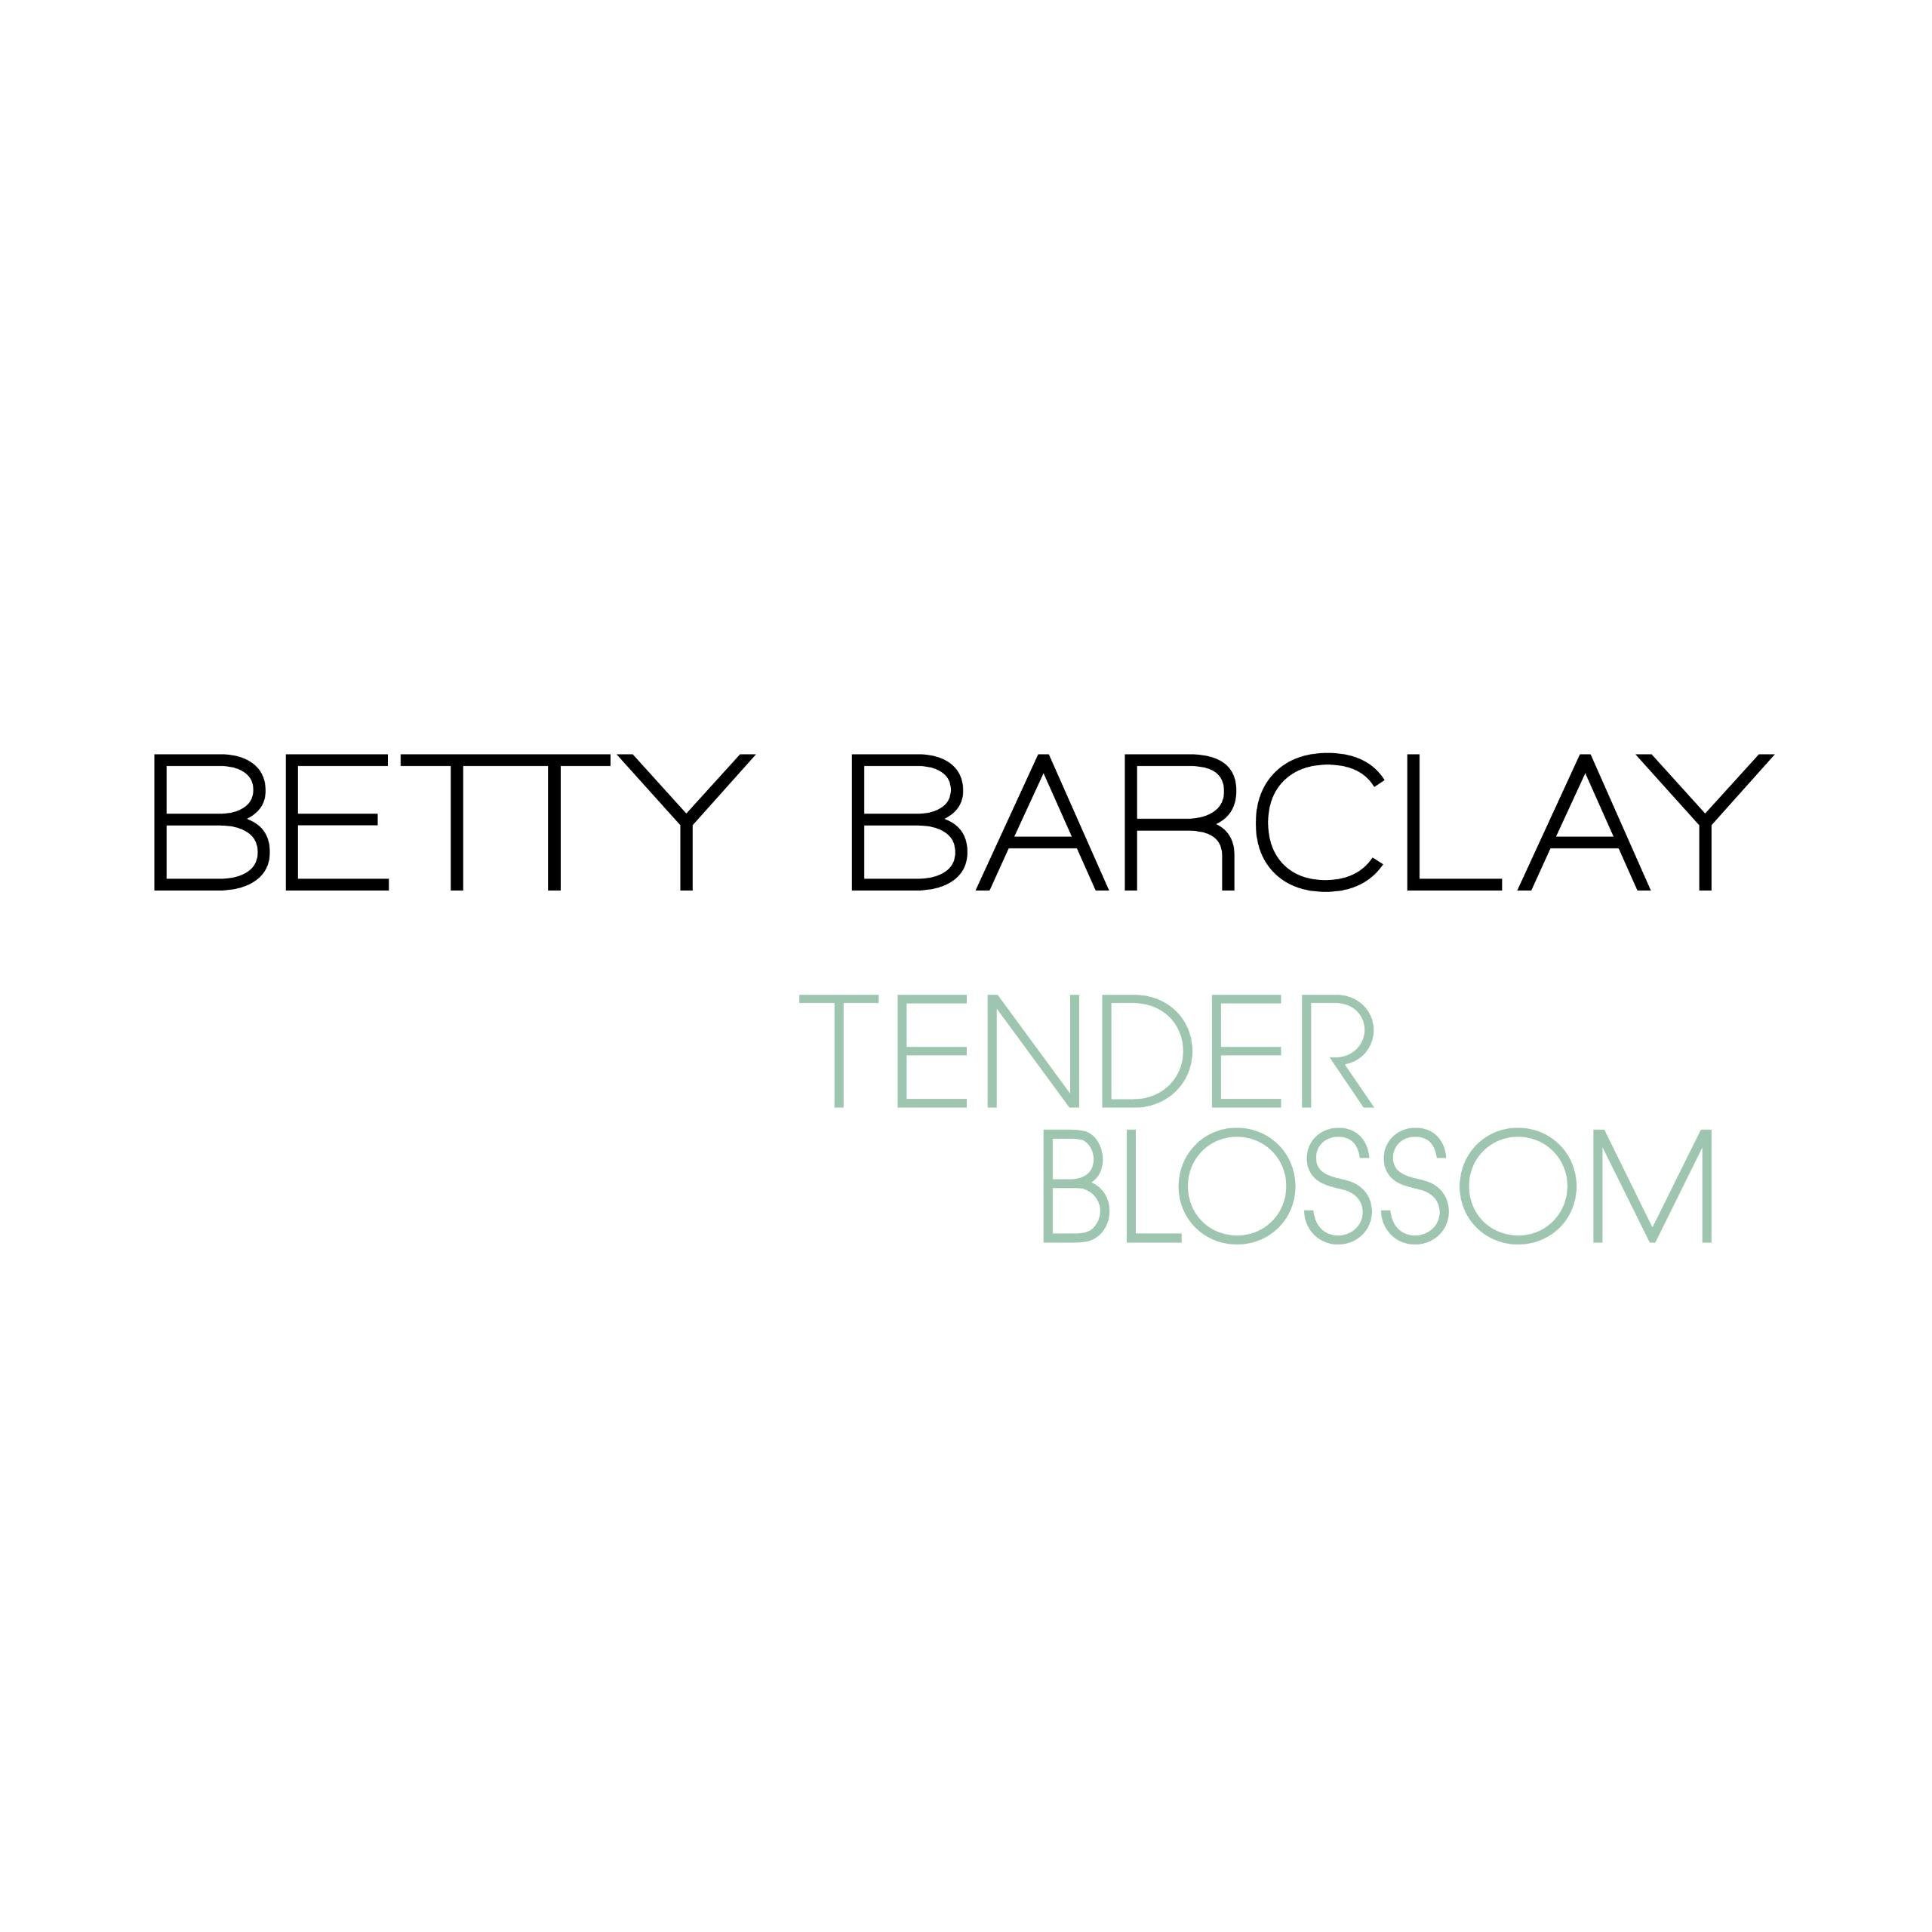 50 Eau Barclay Betty de de Betty Tender Blossom ml Eau Barclay Toilette Toilette